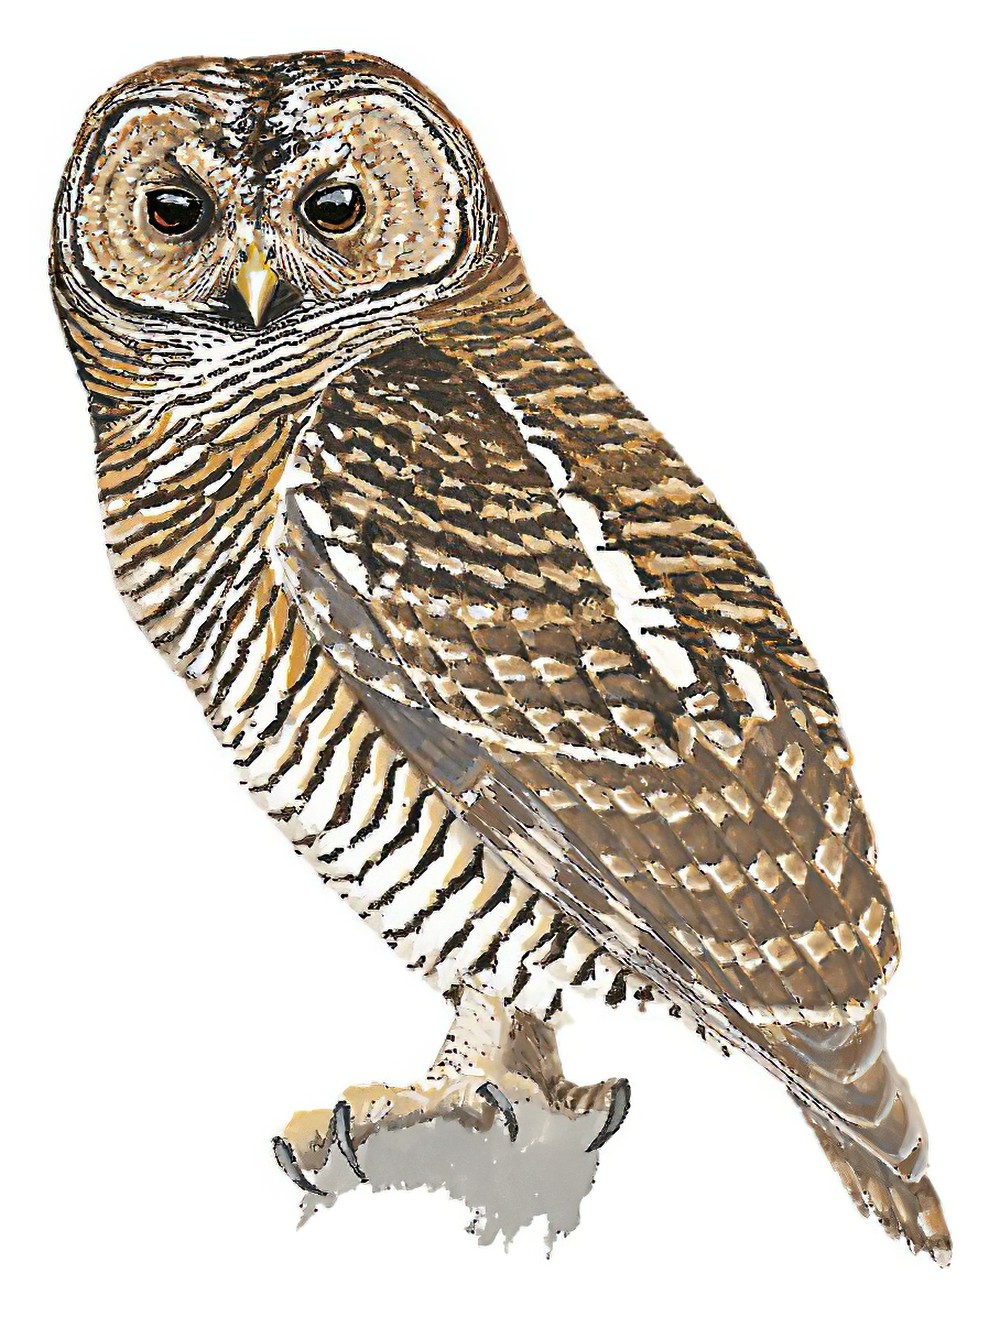 Rusty-barred Owl / Strix hylophila